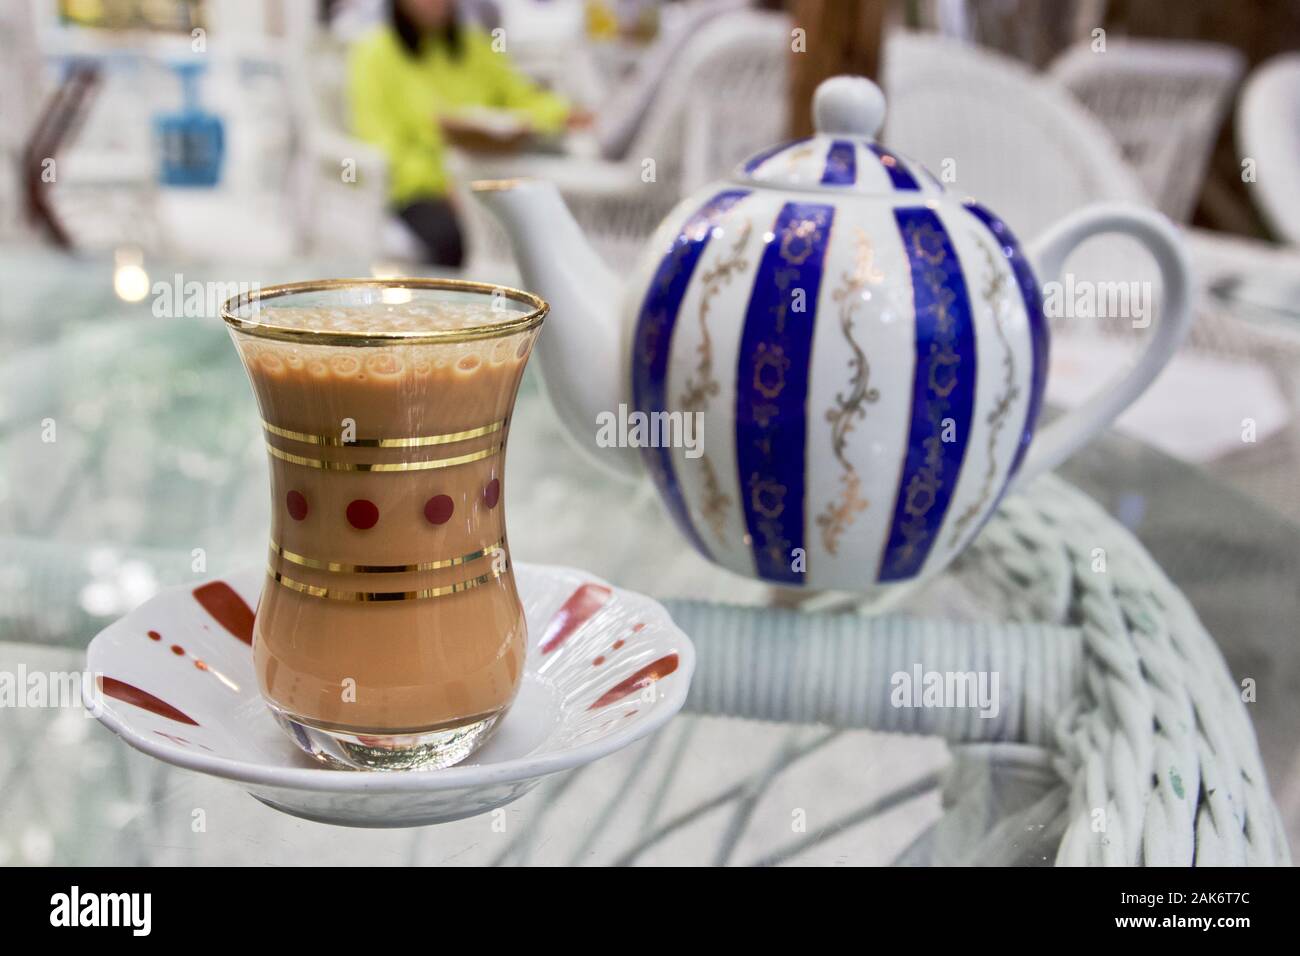 A glass of Karak Tea next to a striped teapot in Dubai, UAE Stock Photo